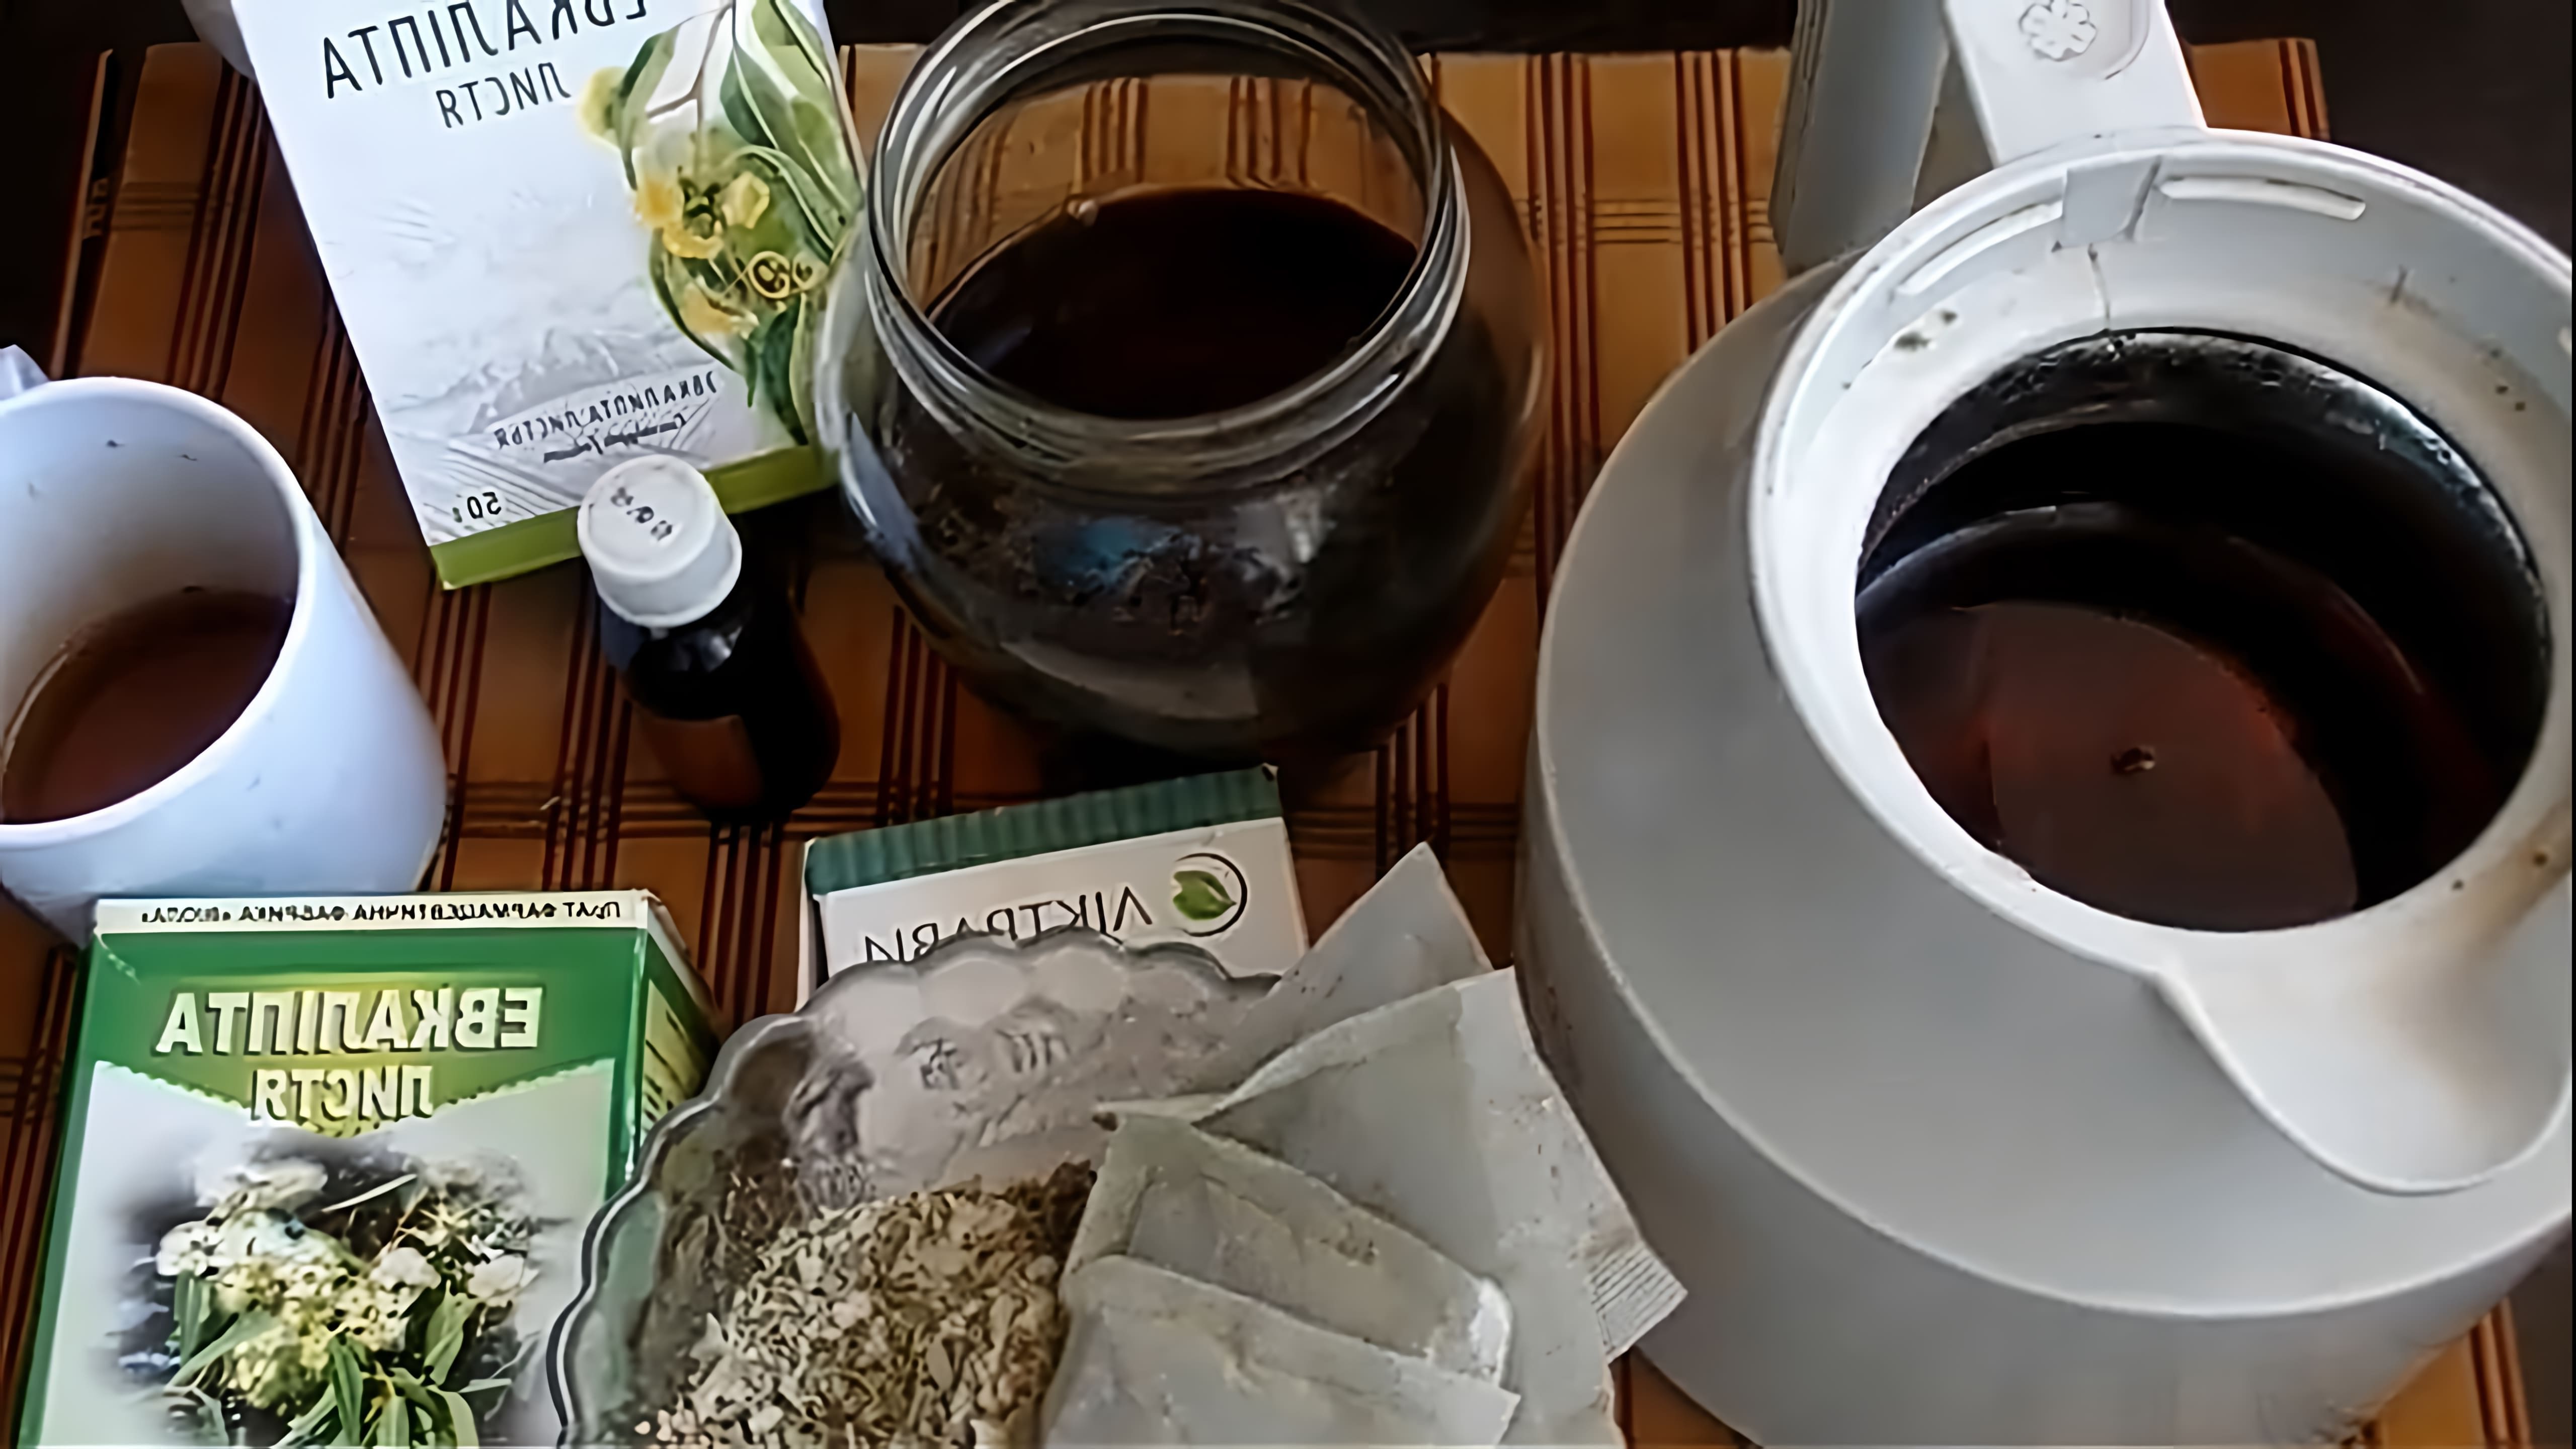 В этом видео автор делится своим опытом приготовления настойки эвкалипта